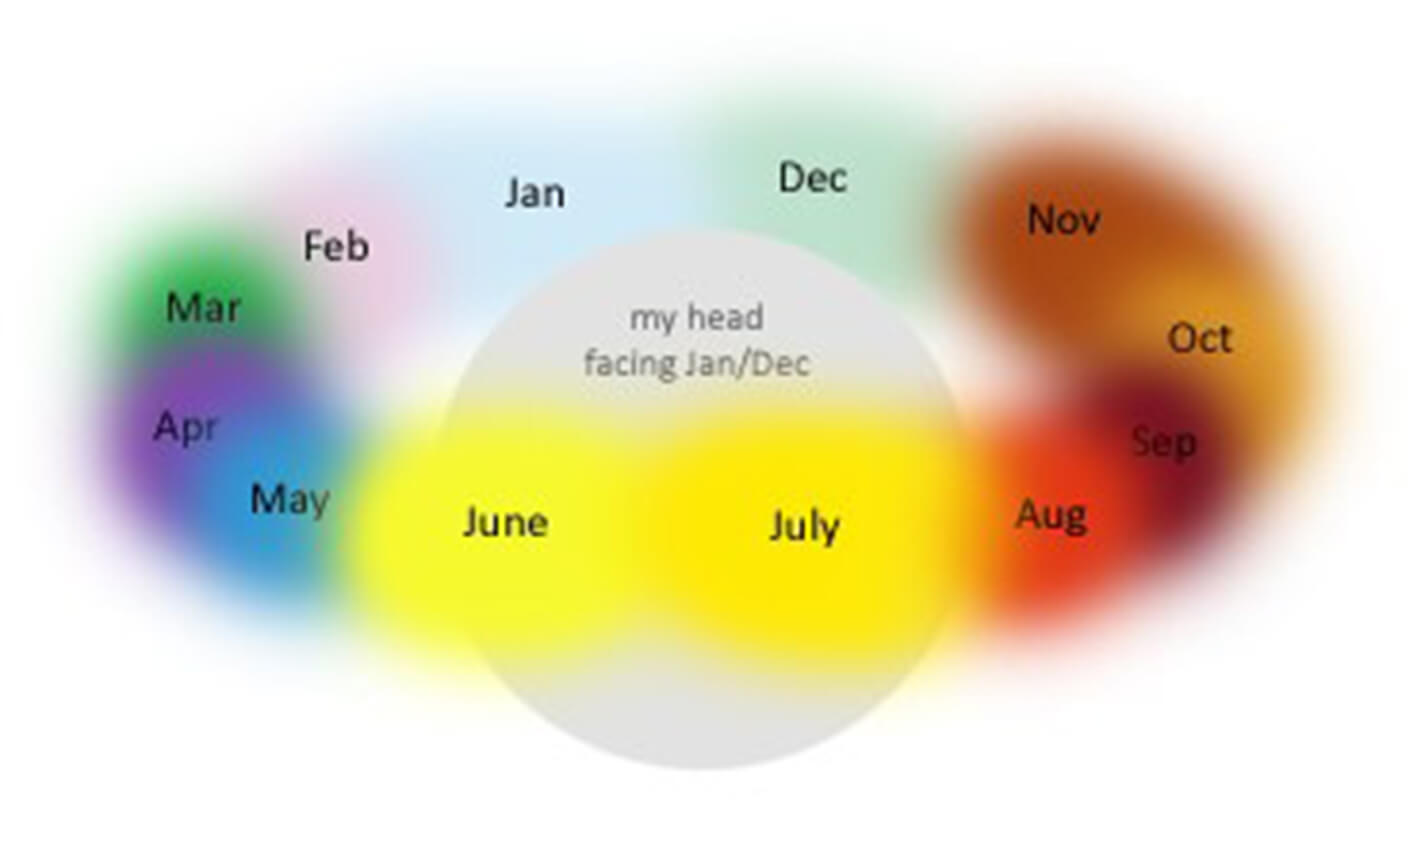 При пространственно-временной синестезии некоторые синестеты видят дни недели или месяцы расположенными вокруг себя по кругу и раскрашенными в разные цвета